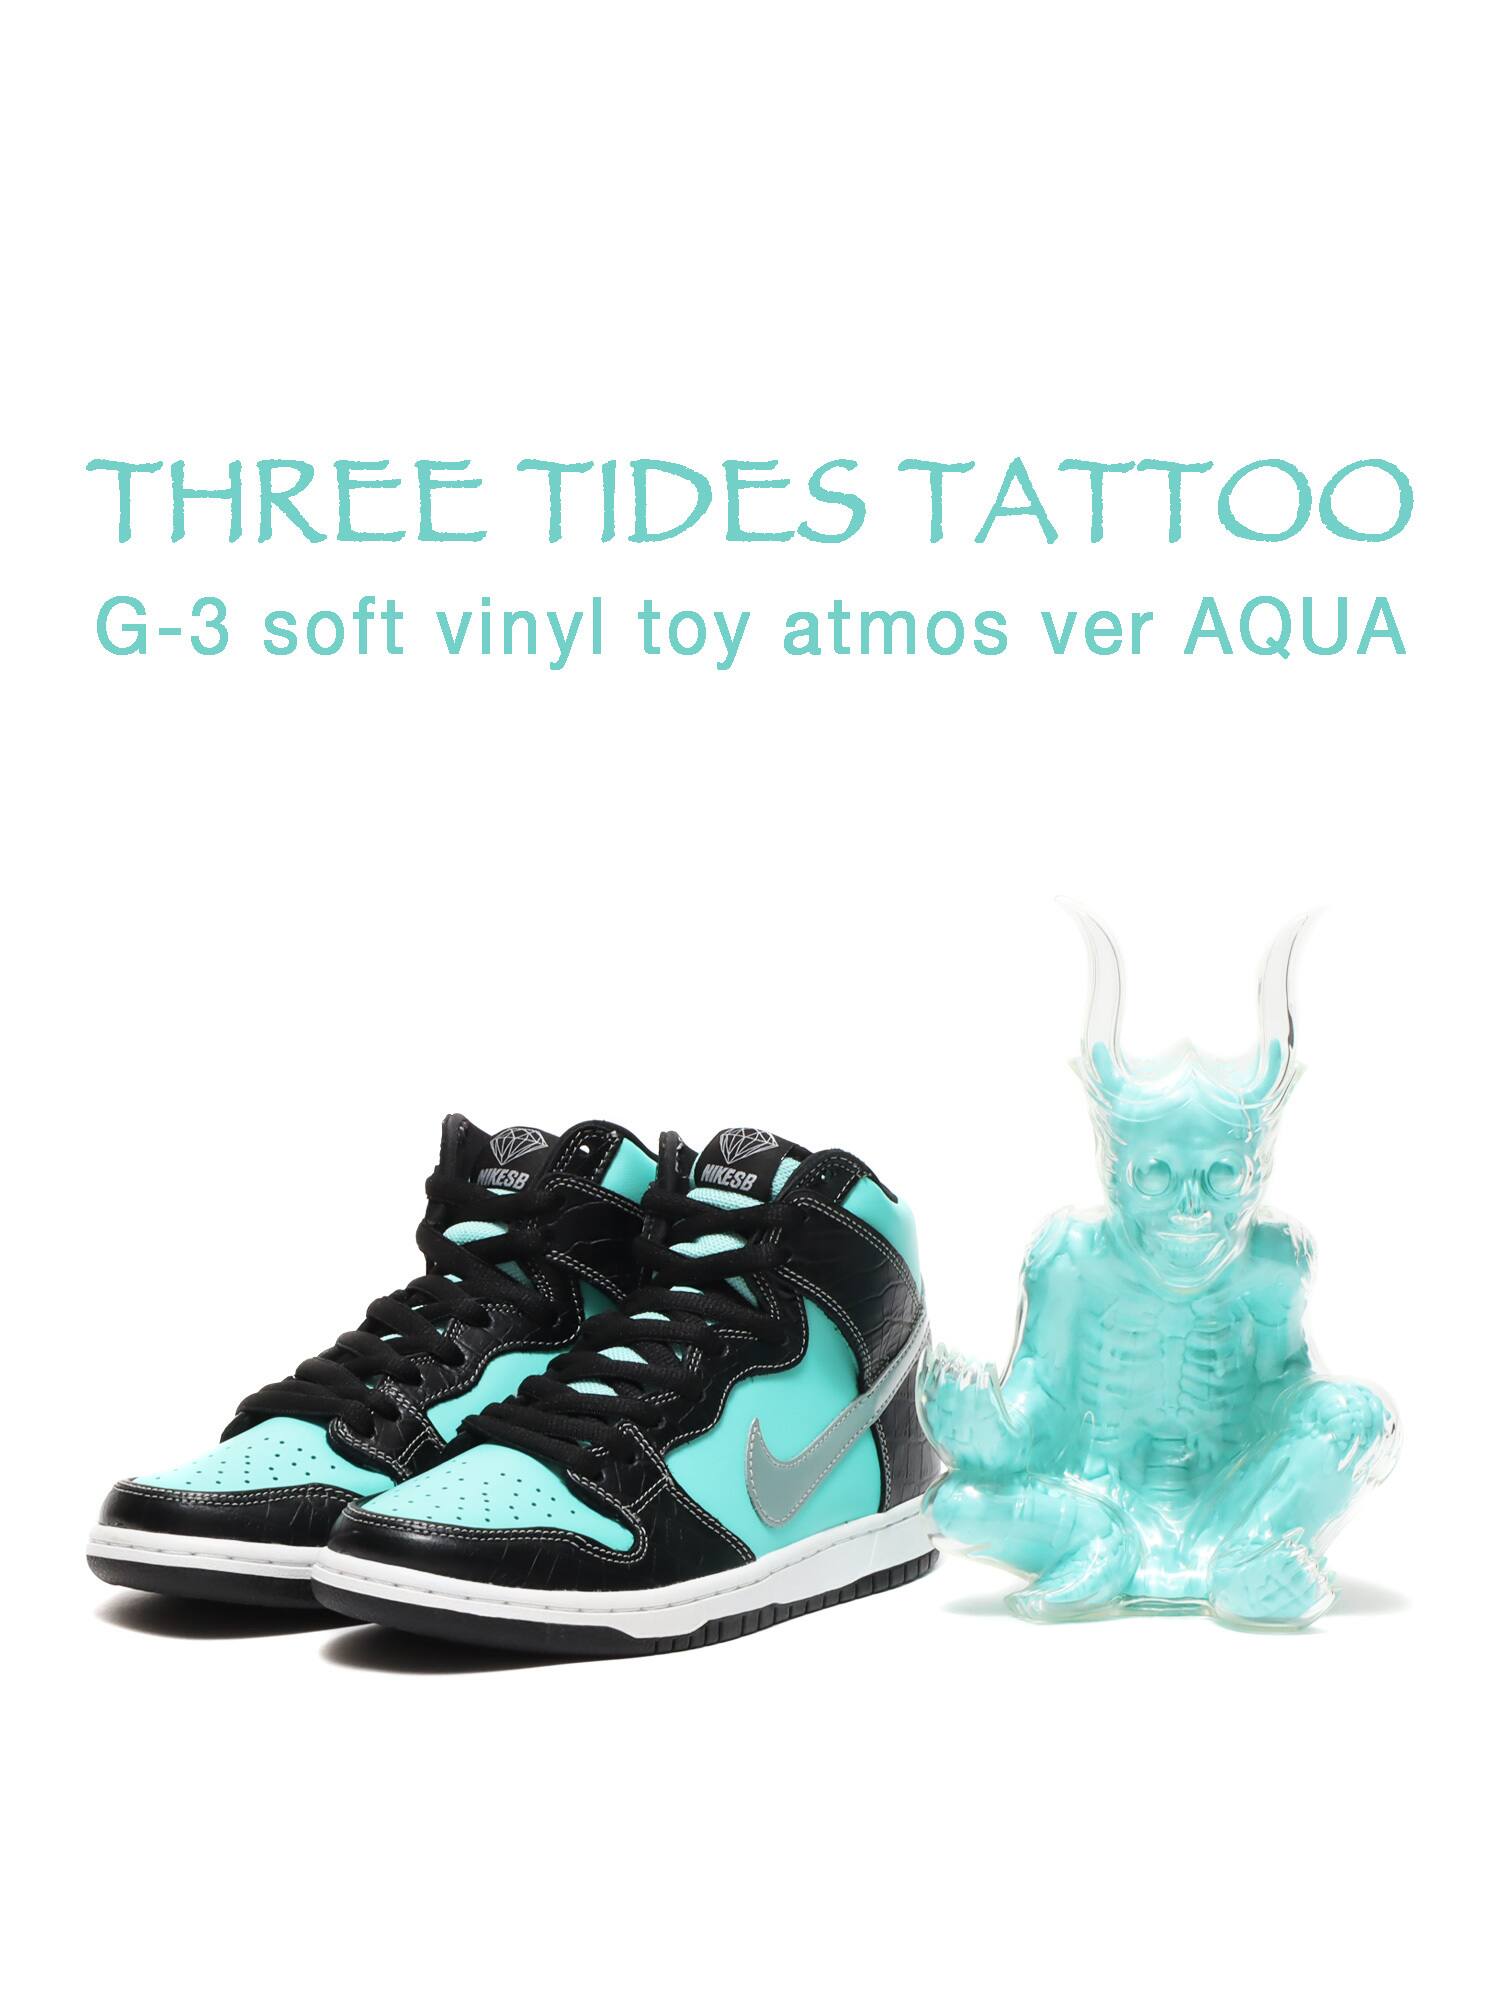 THREE TIDES TATTOO G-3 soft vinyl toy